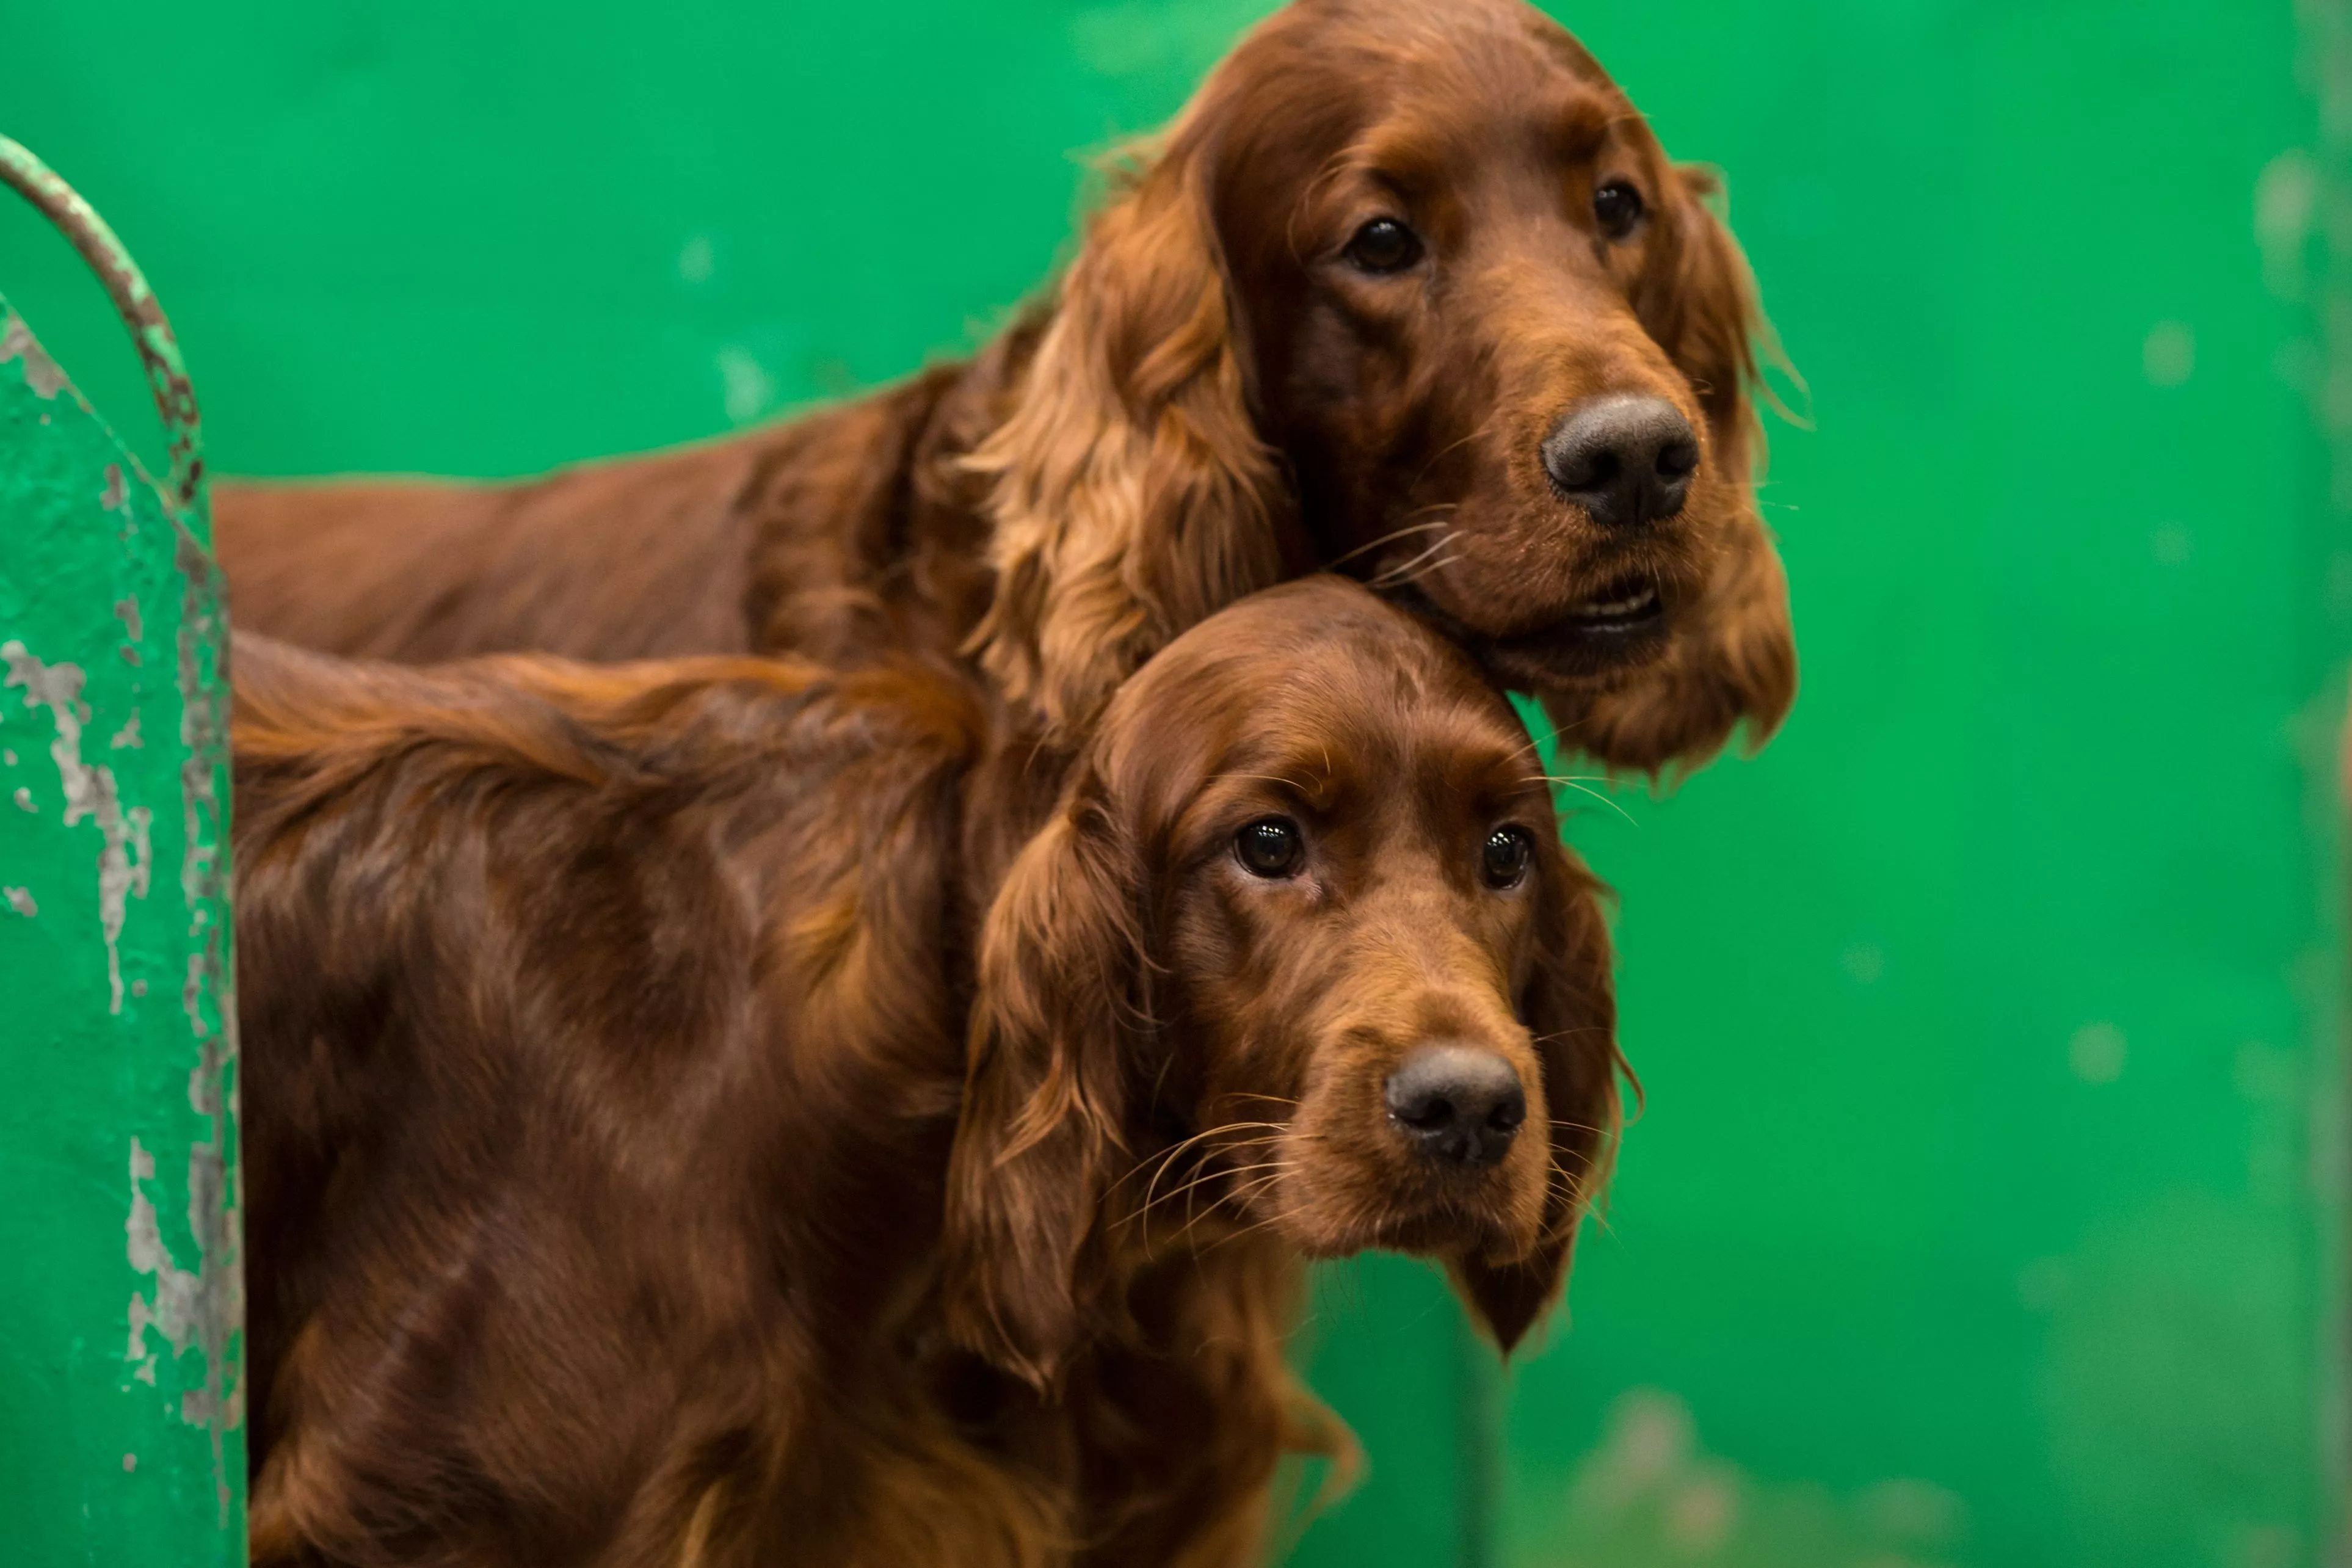  Irish setter dogs UK dog show 2018